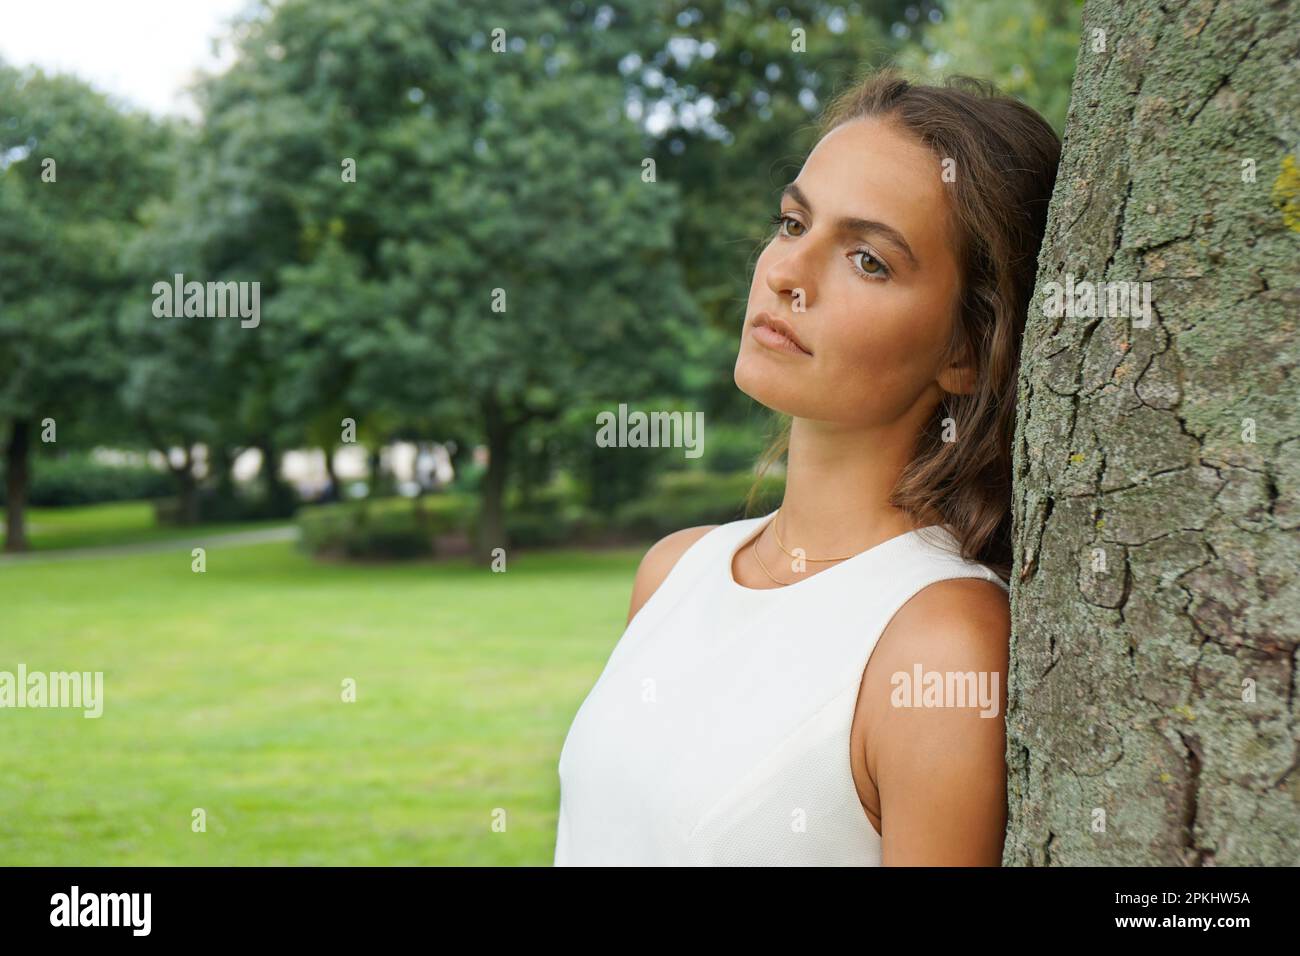 Traurige junge Frau, die sich gegen den Baum lehnt und abwesend blickt Stockfoto